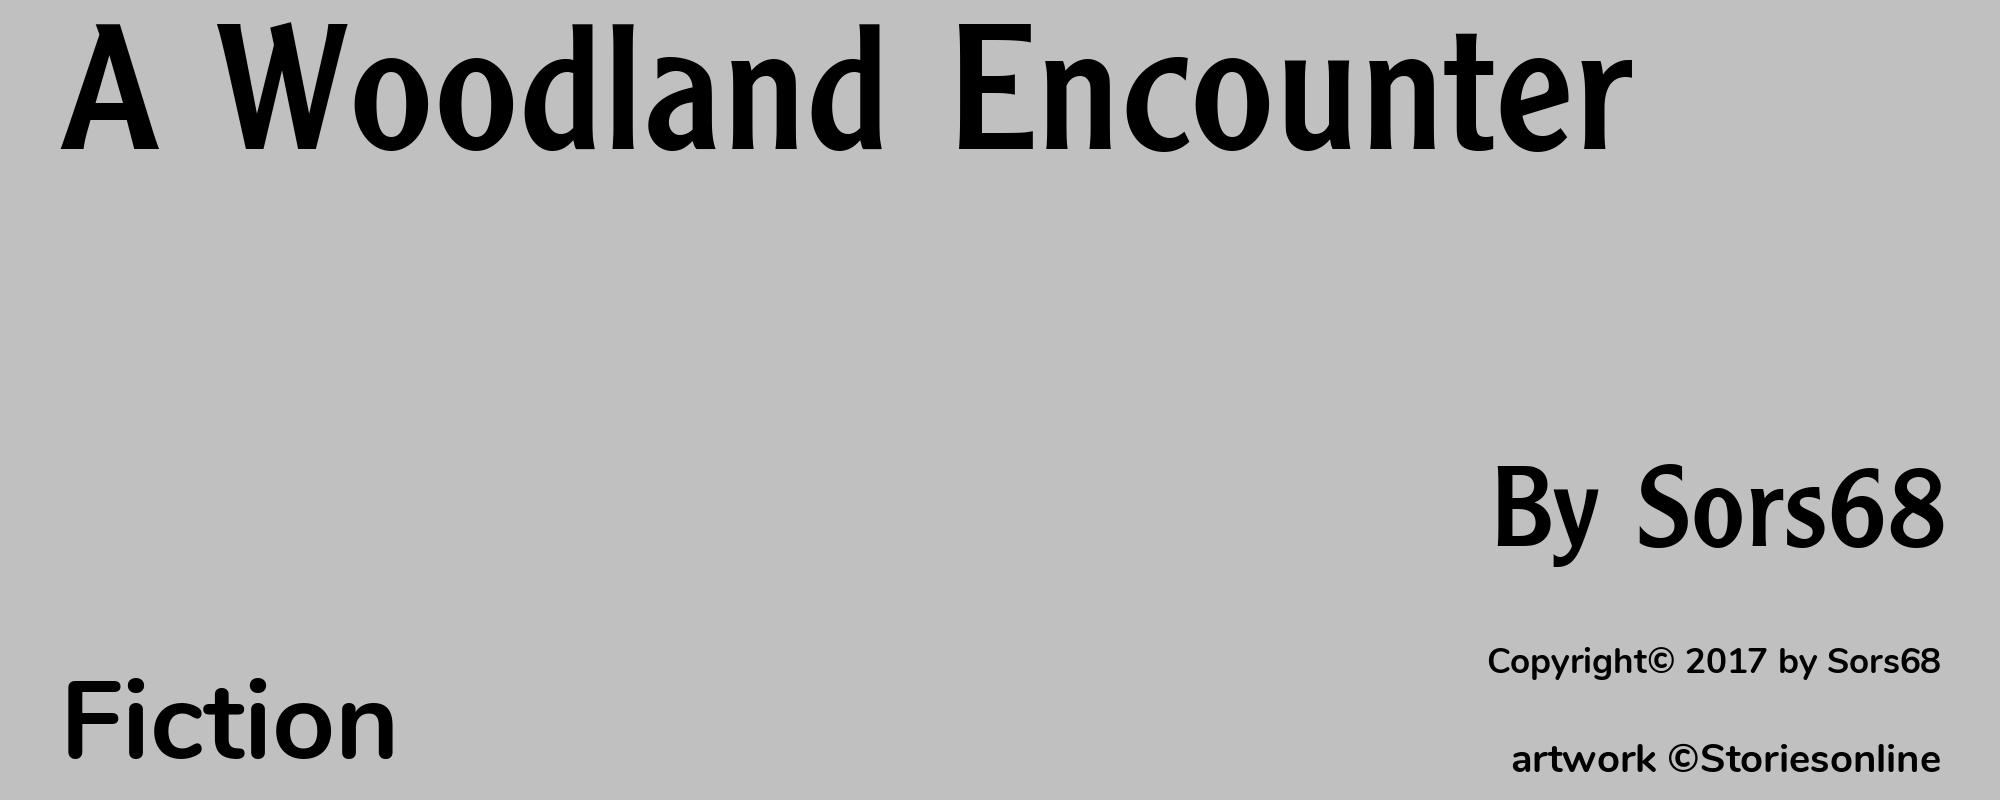 A Woodland Encounter - Cover